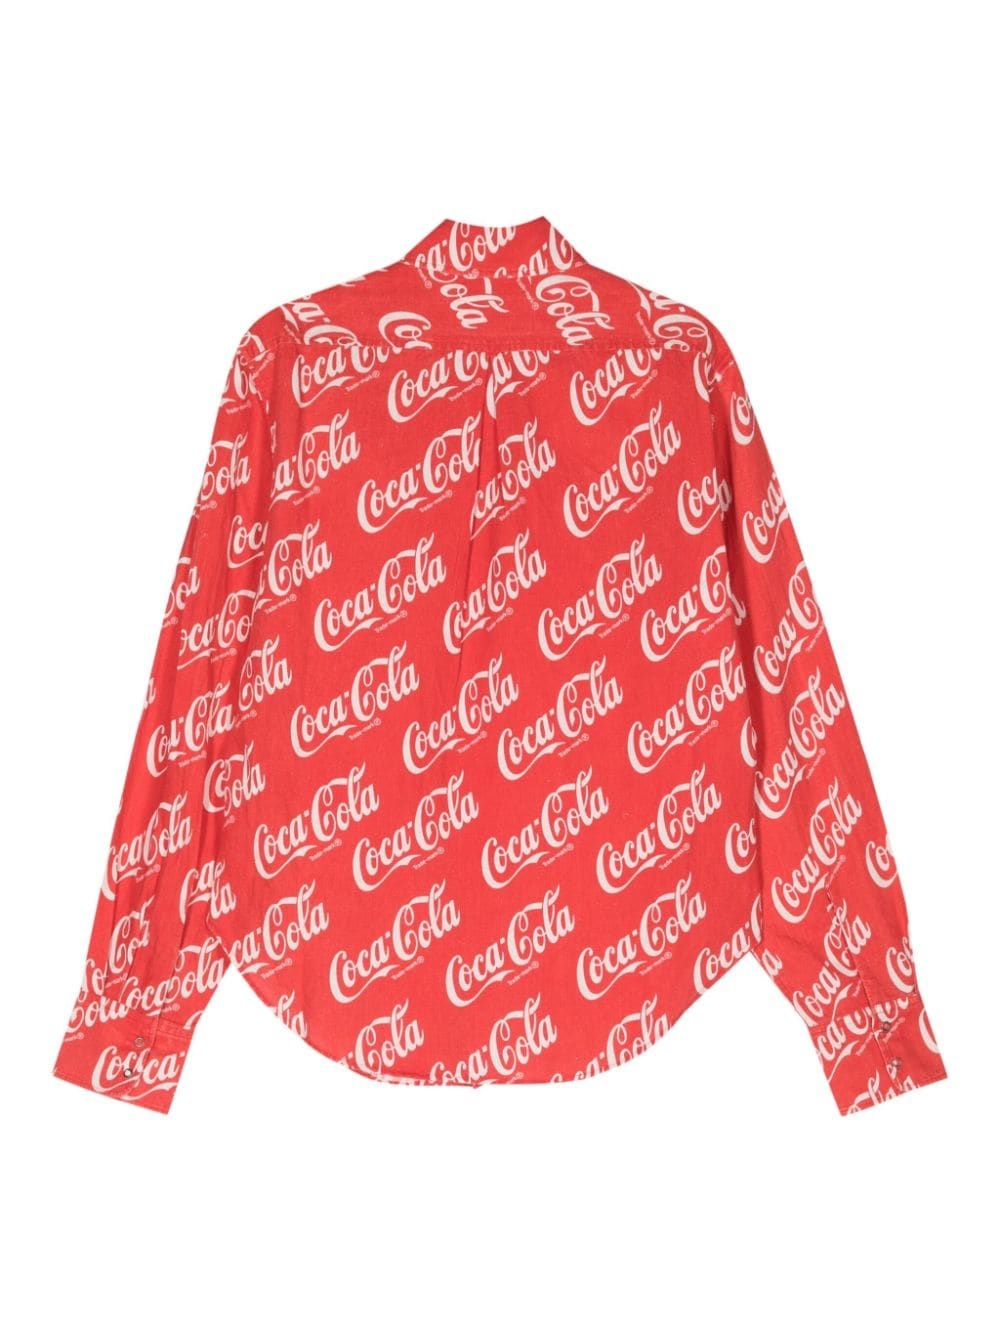 Coca-Cola print shirt - 2